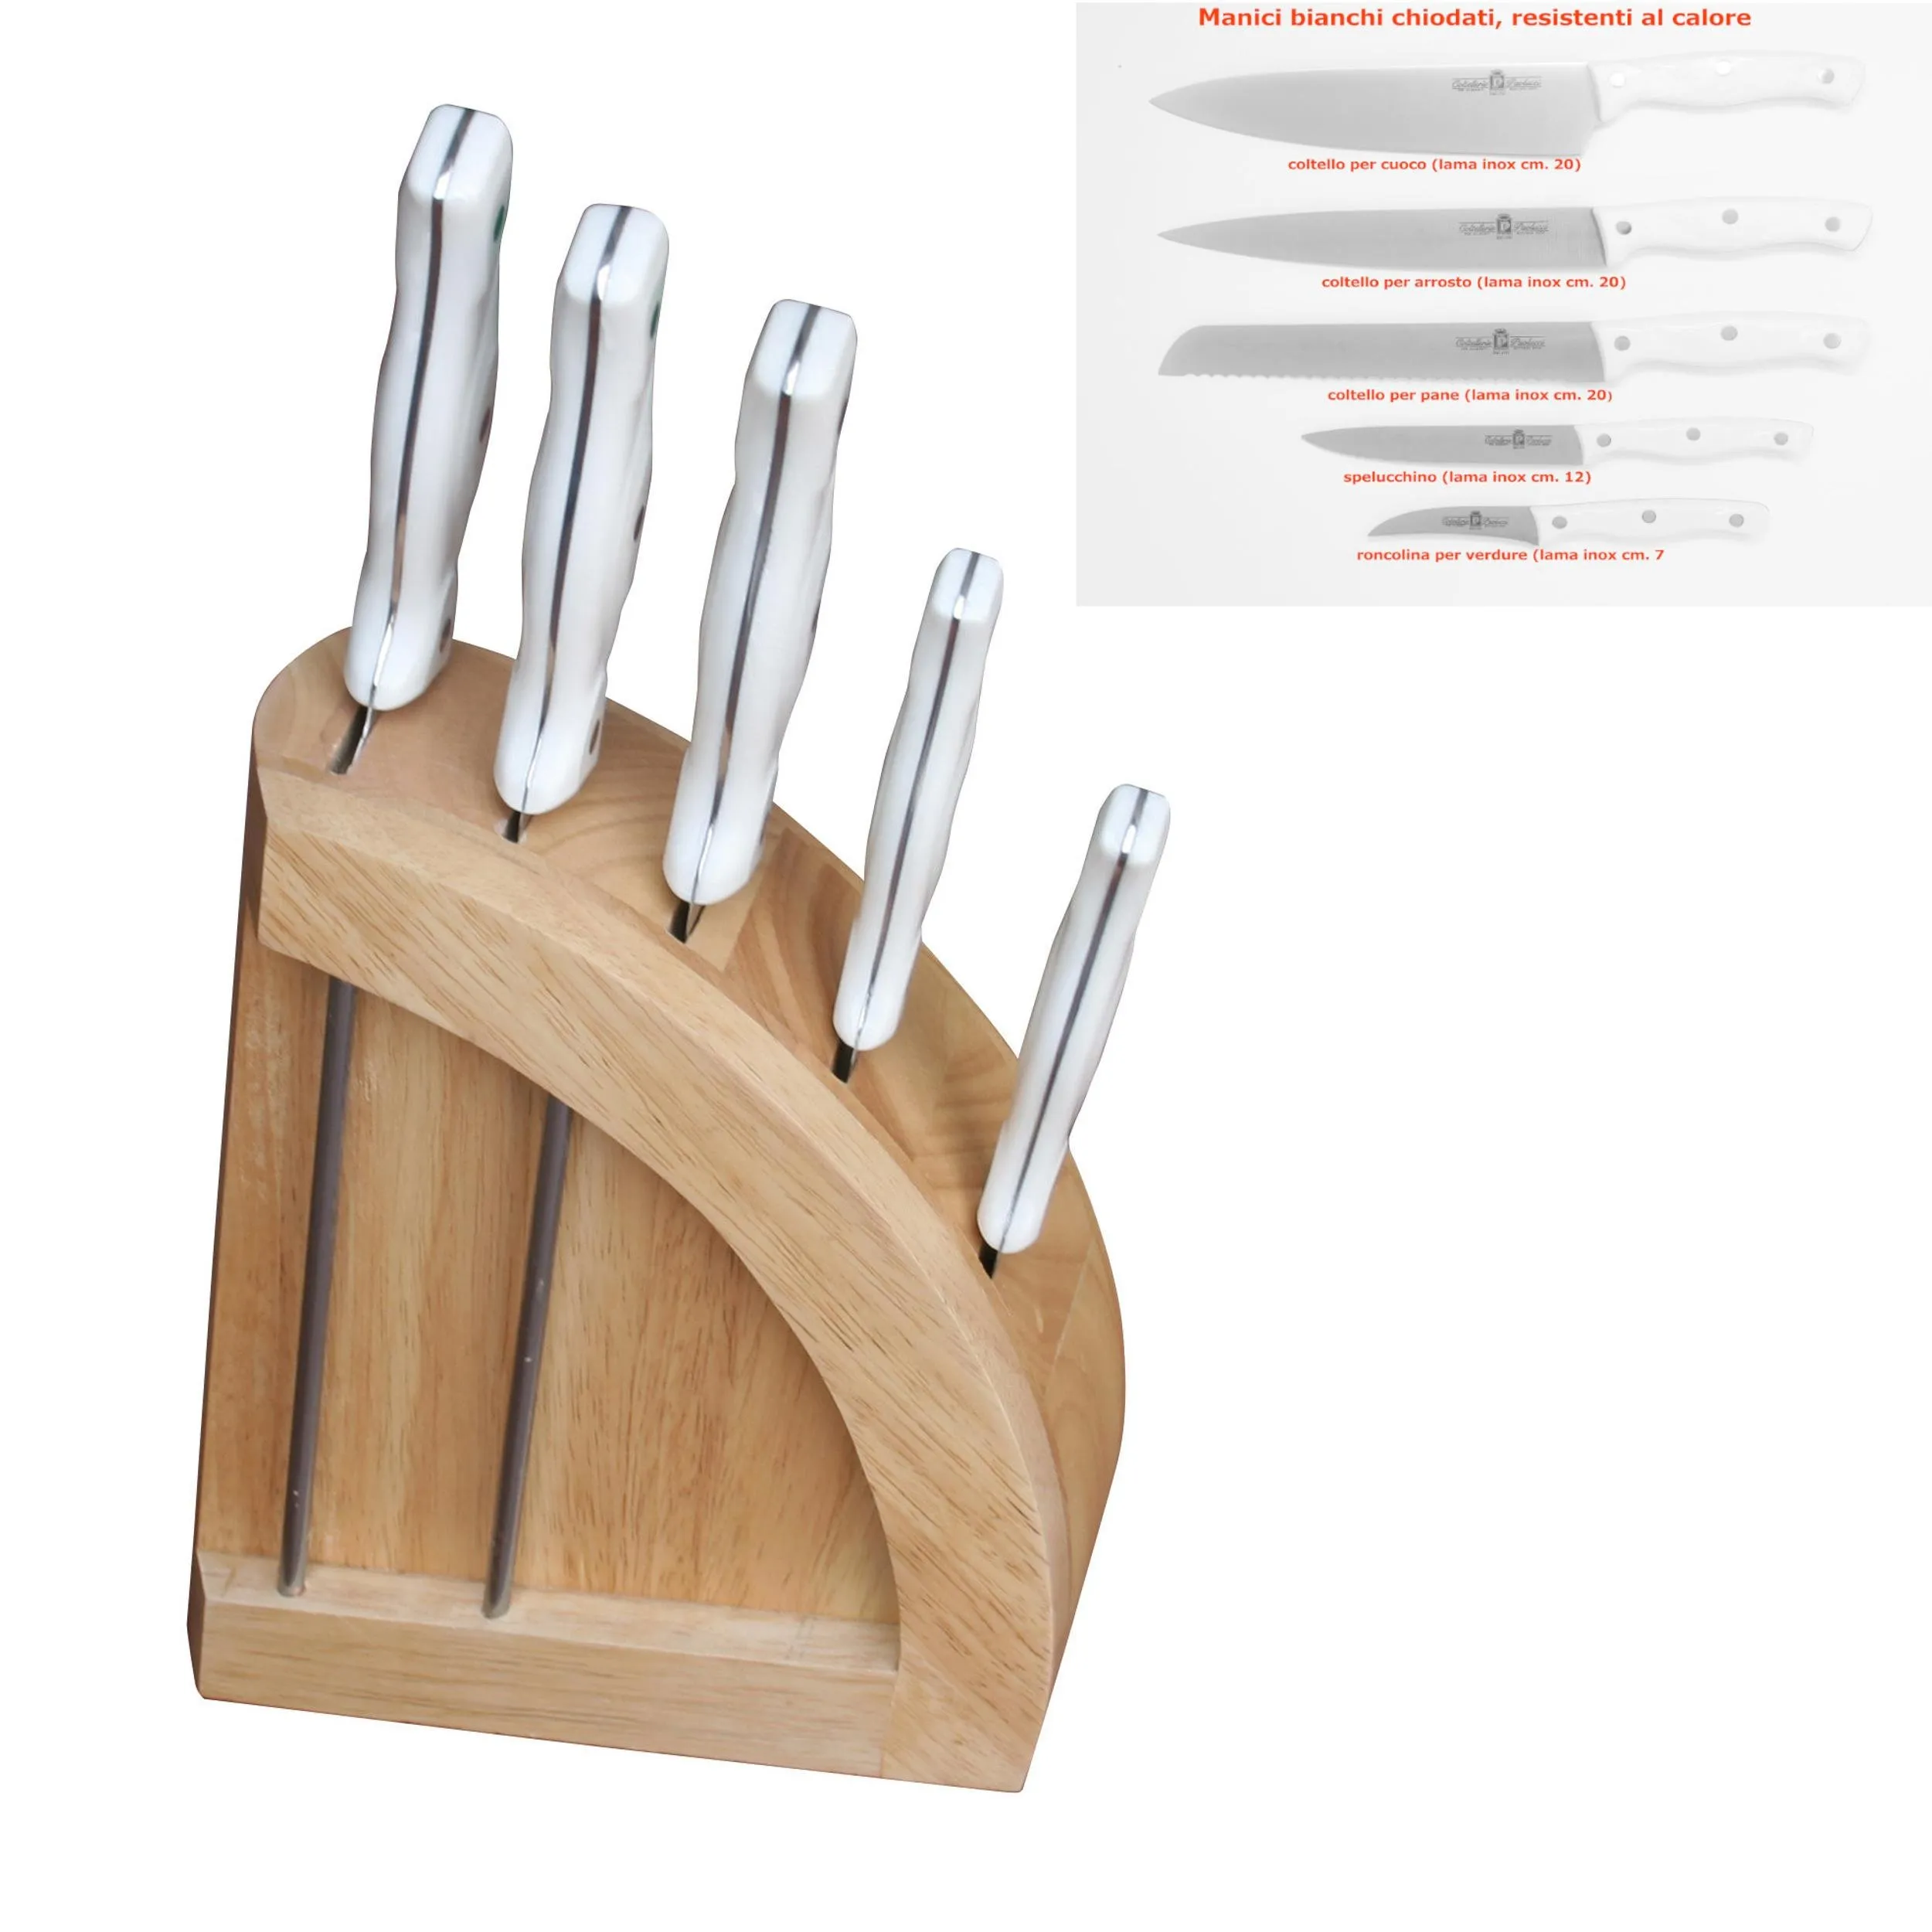 Ceppo coltelli in legno di faggio 20x8xh39 cm con 5 coltelli Da cucina Professionali manici bianchi n acciaio inox molibdeno